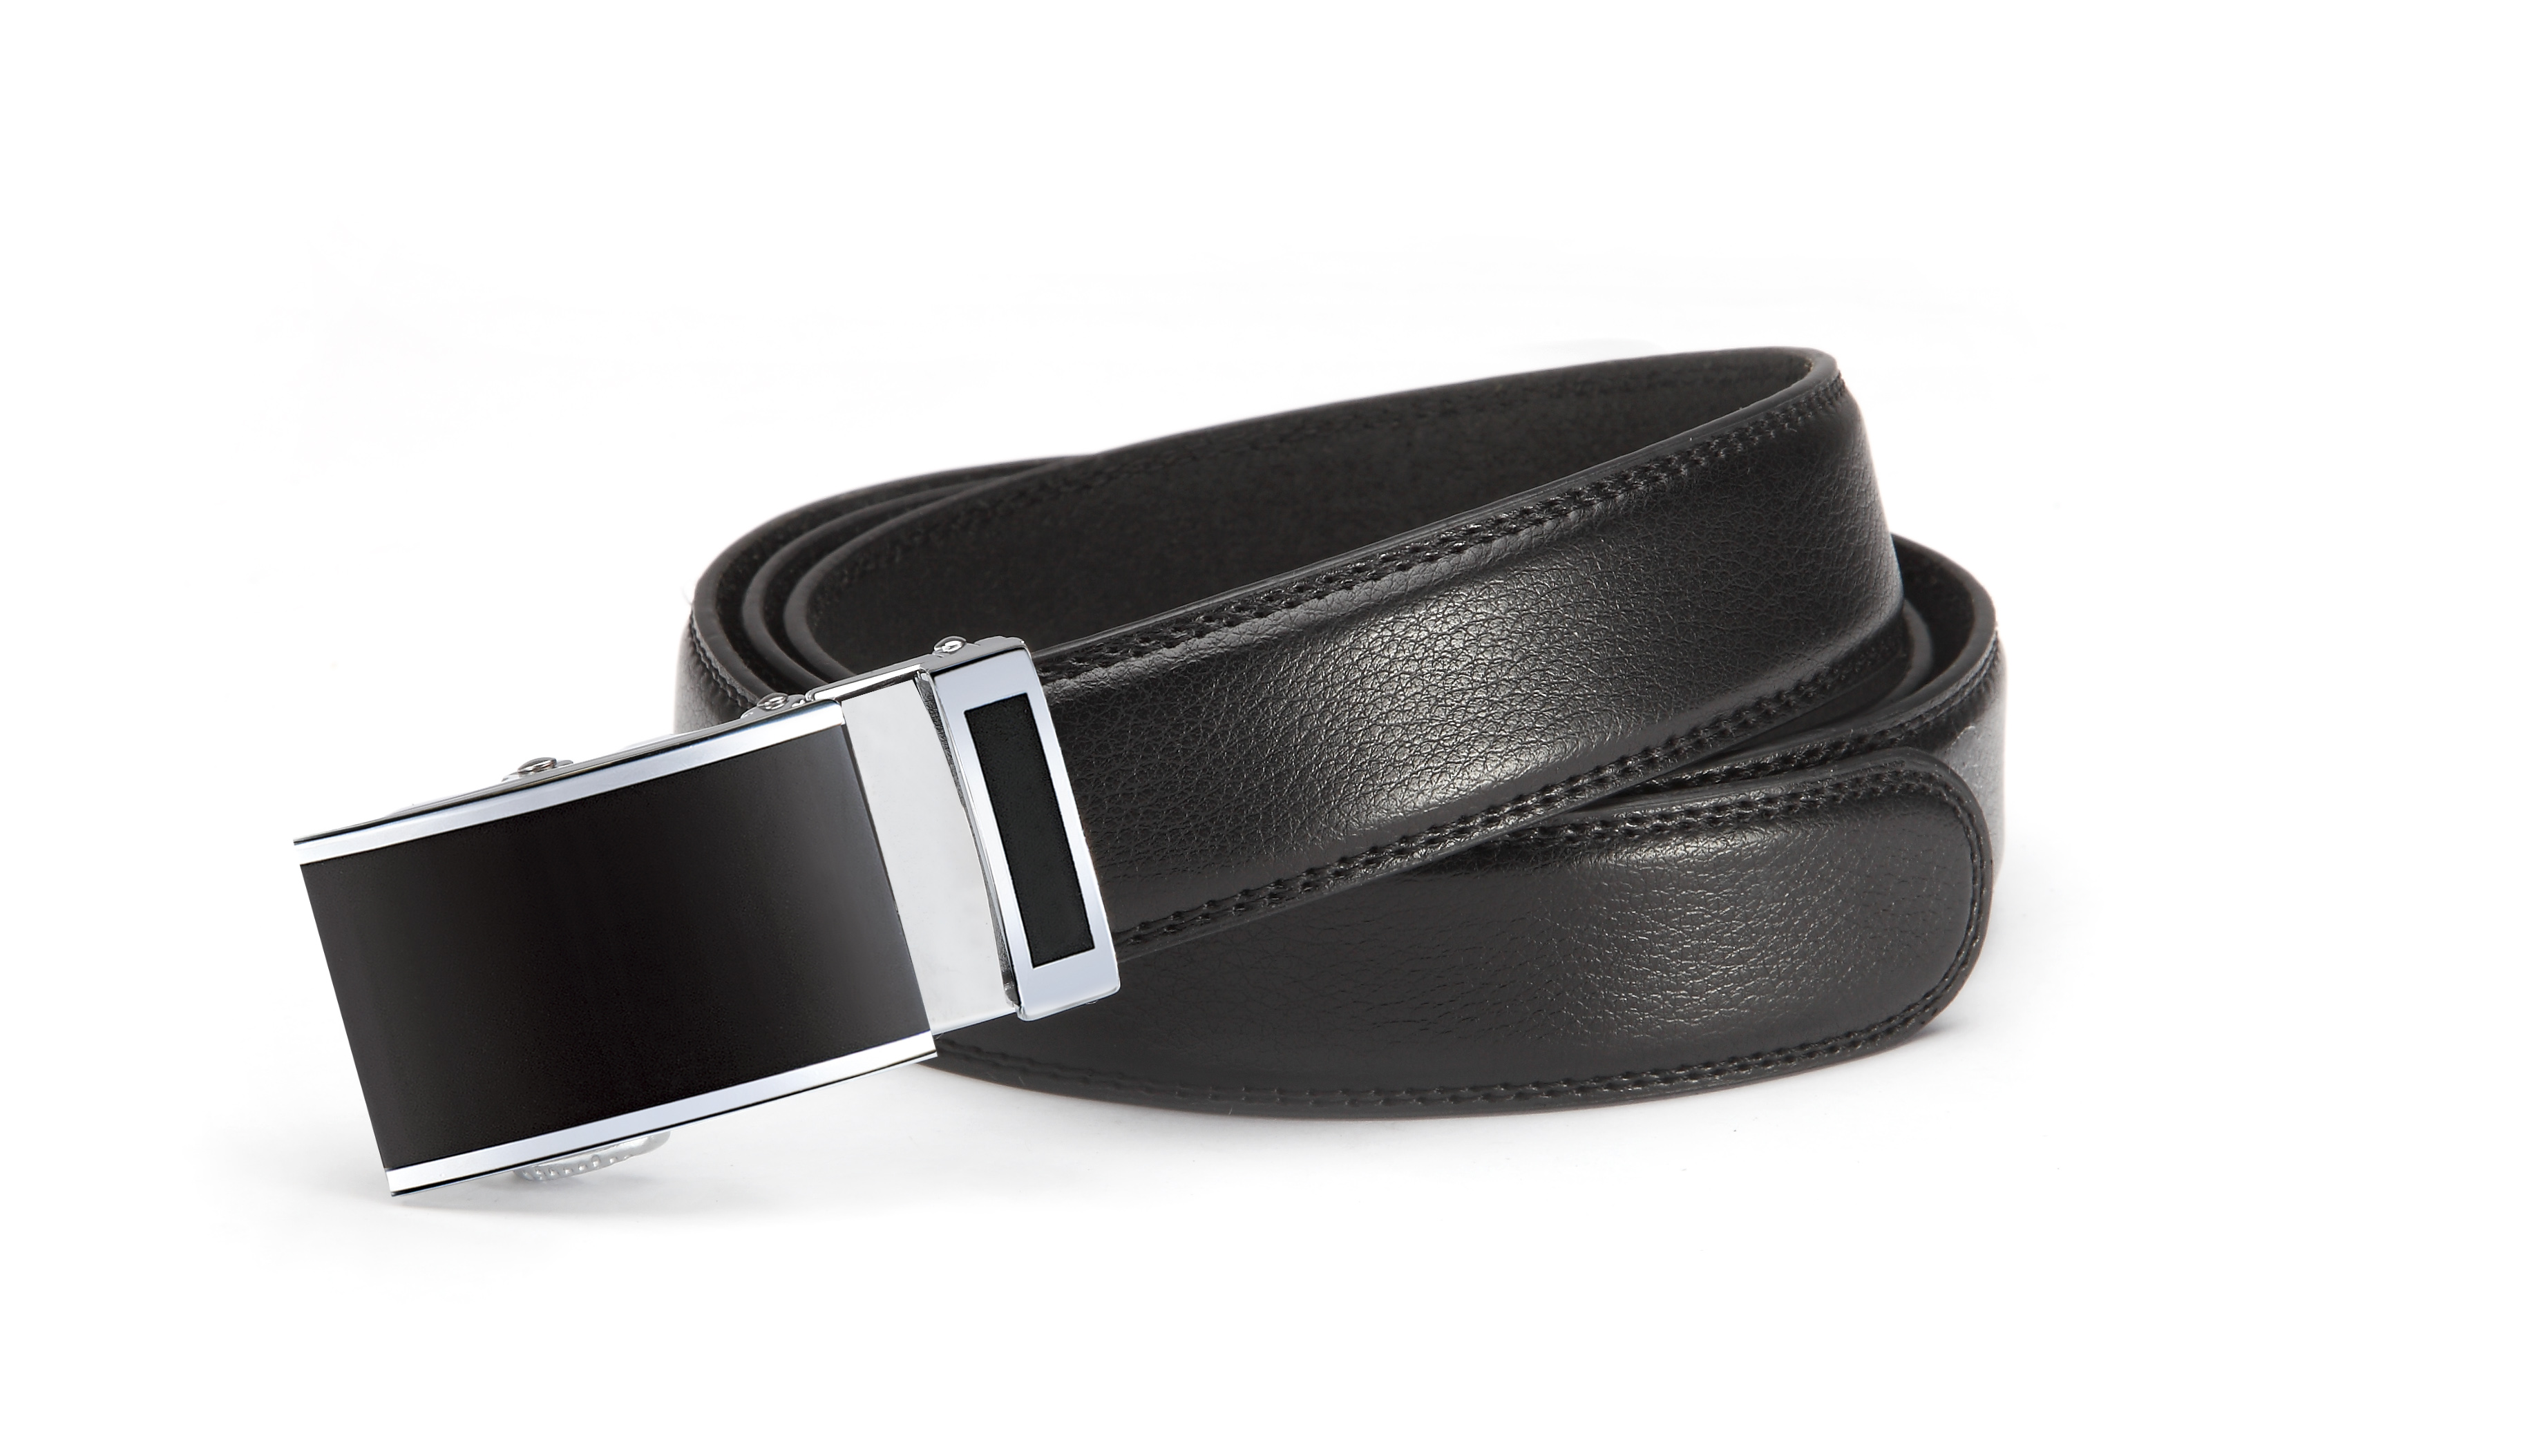 Anzuggürtel, Ledergürtel mit Automatikschließe, schwarz, 3,2 cm, nach  Längen sortiertenSuit belt, Leather belt, automatic buckle, 3,2 cm,  assorted in different length